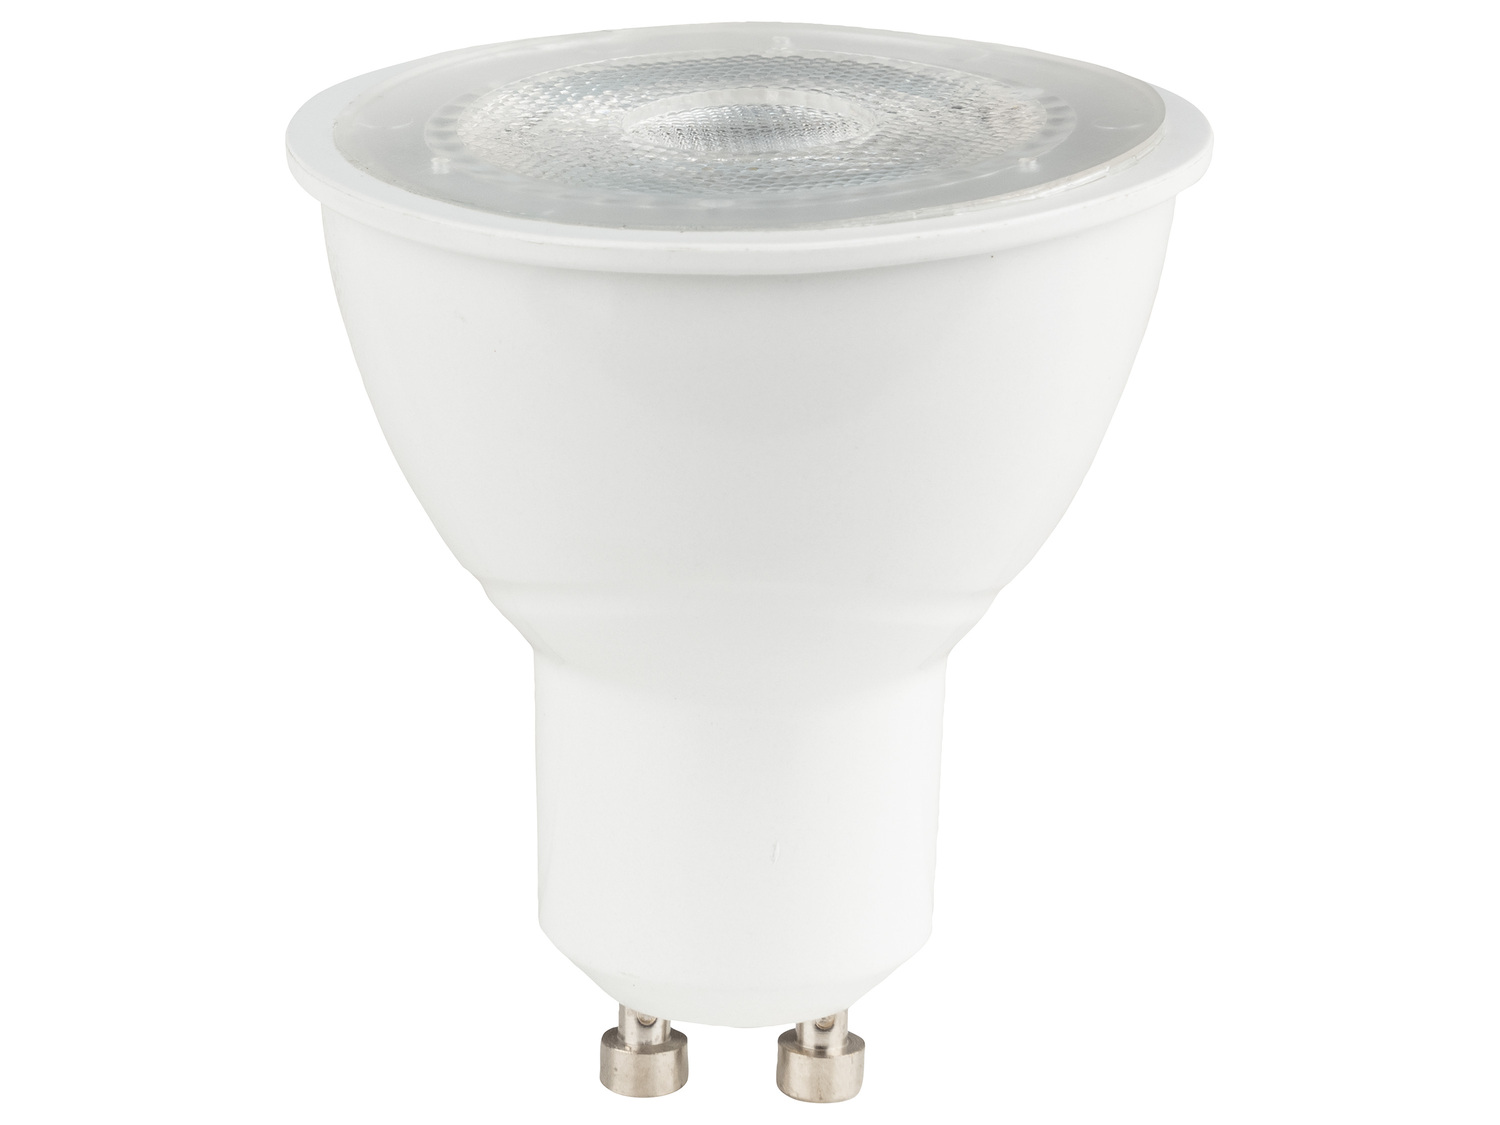 Ampoule LED connectée , le prix 7.99 € 
- E27, 9 W, 806 lm
- Commande vocale
- ...